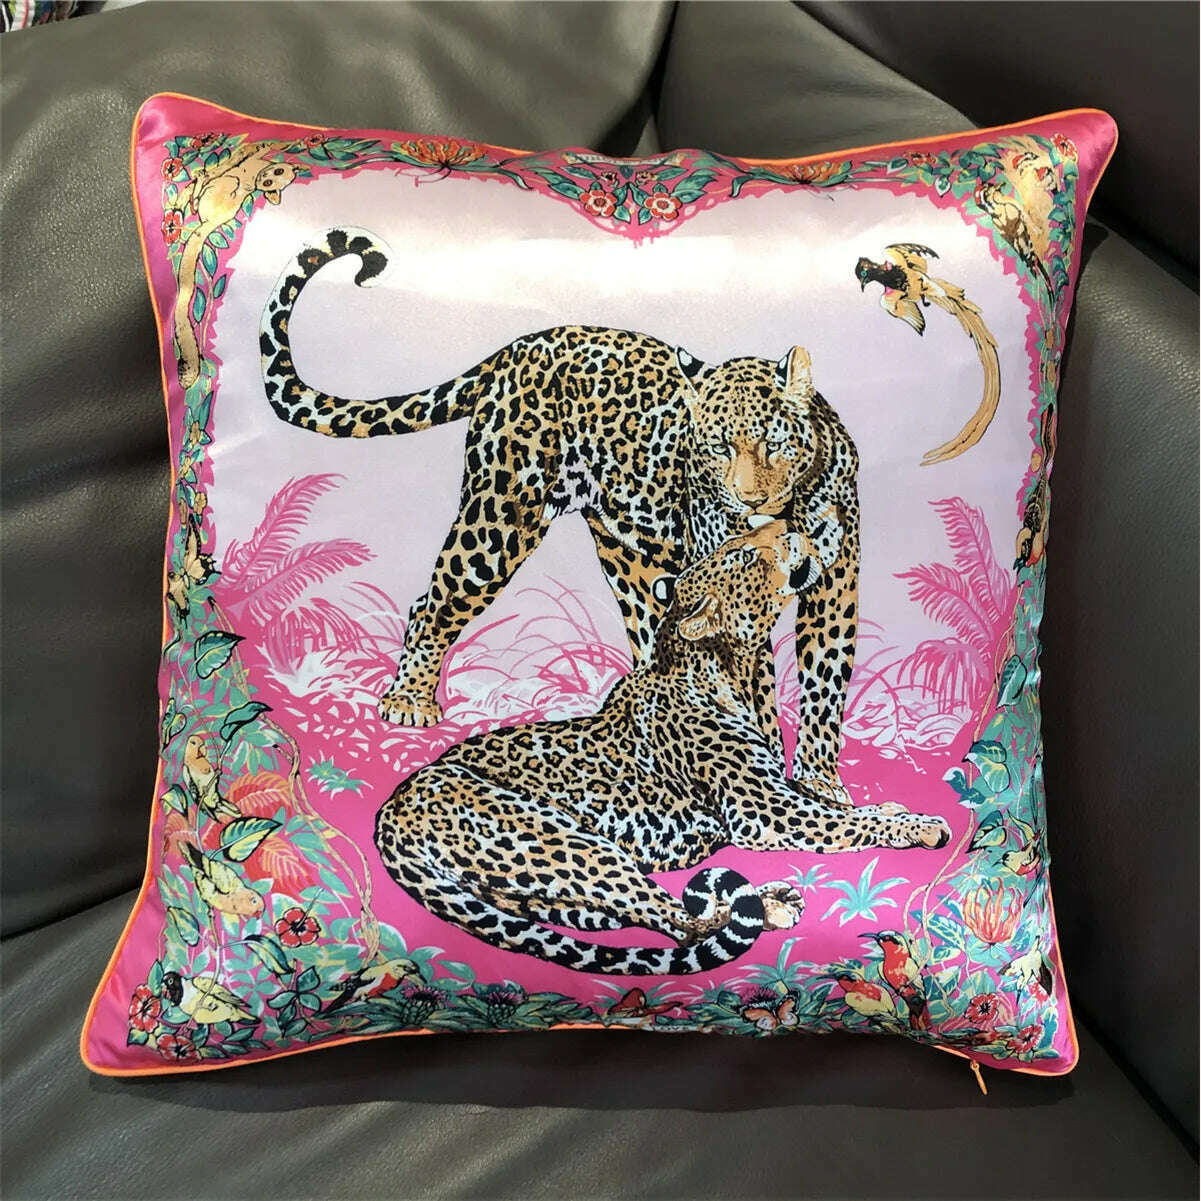 KIMLUD, Brand Design Two Leopards Silk Throw Pillow Fashion Pillowcase Sofa Chair Car Lumbar Pillow Cushion Cover Back Cushion 2022 New, A28-1 / 45x45cm, KIMLUD Women's Clothes